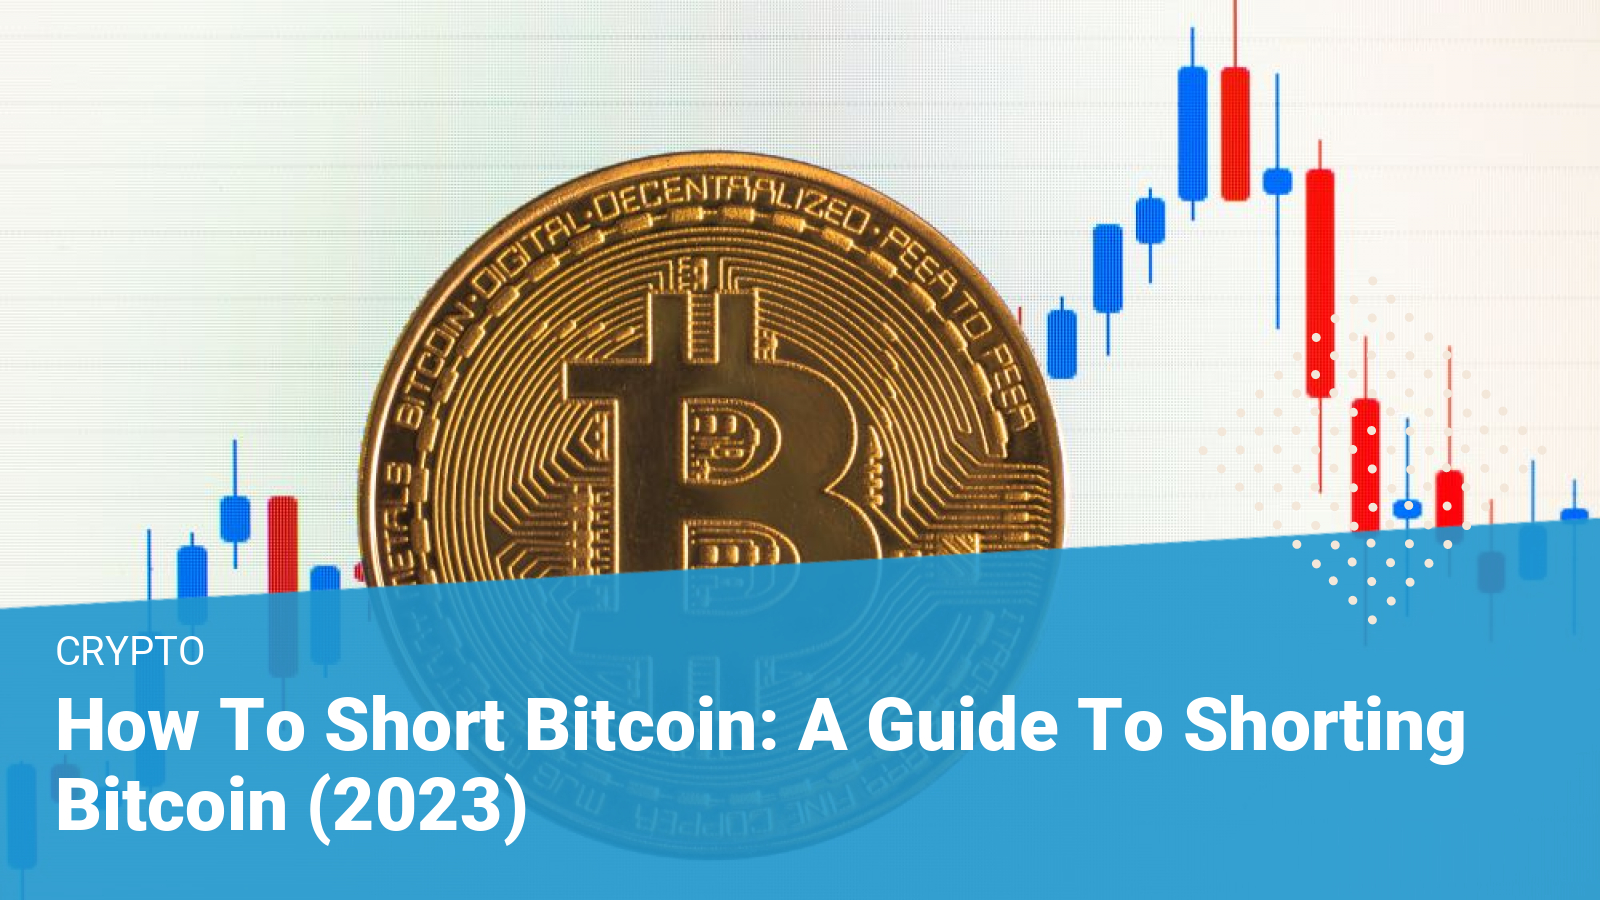 Shorting Bitcoin